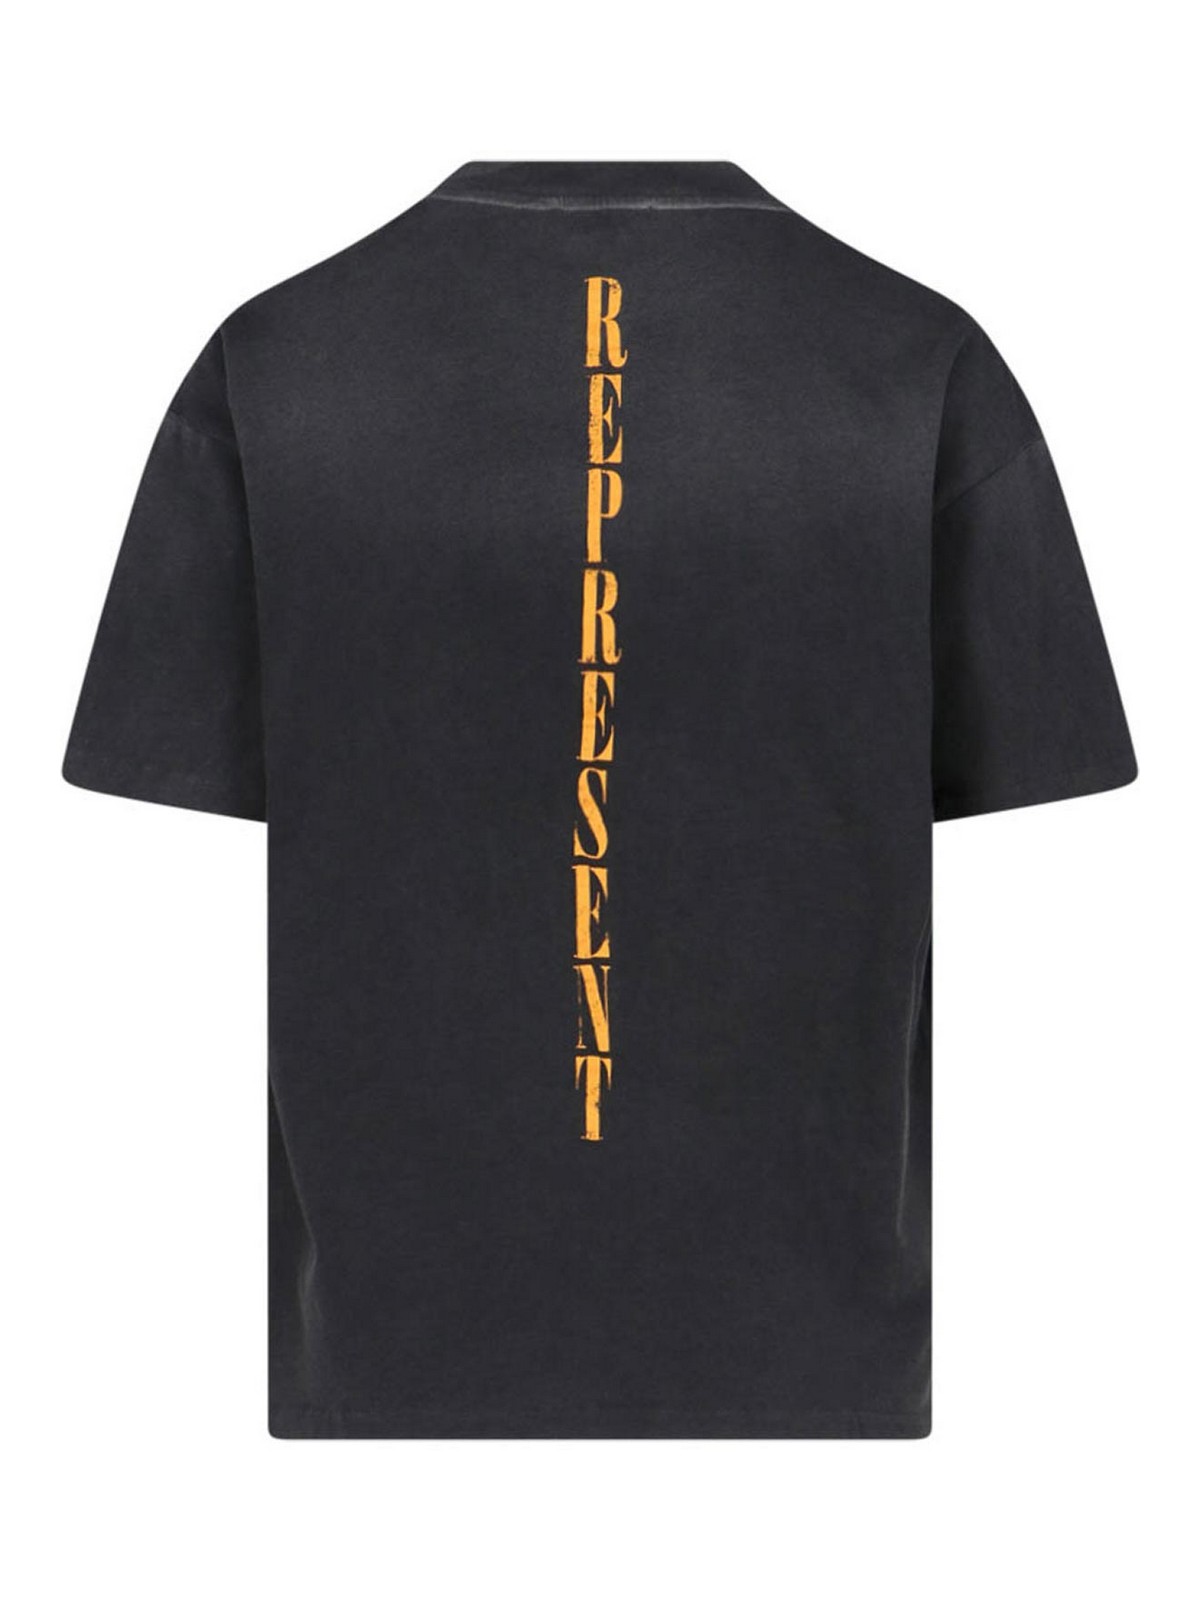 Shop Represent Camiseta - Negro In Black